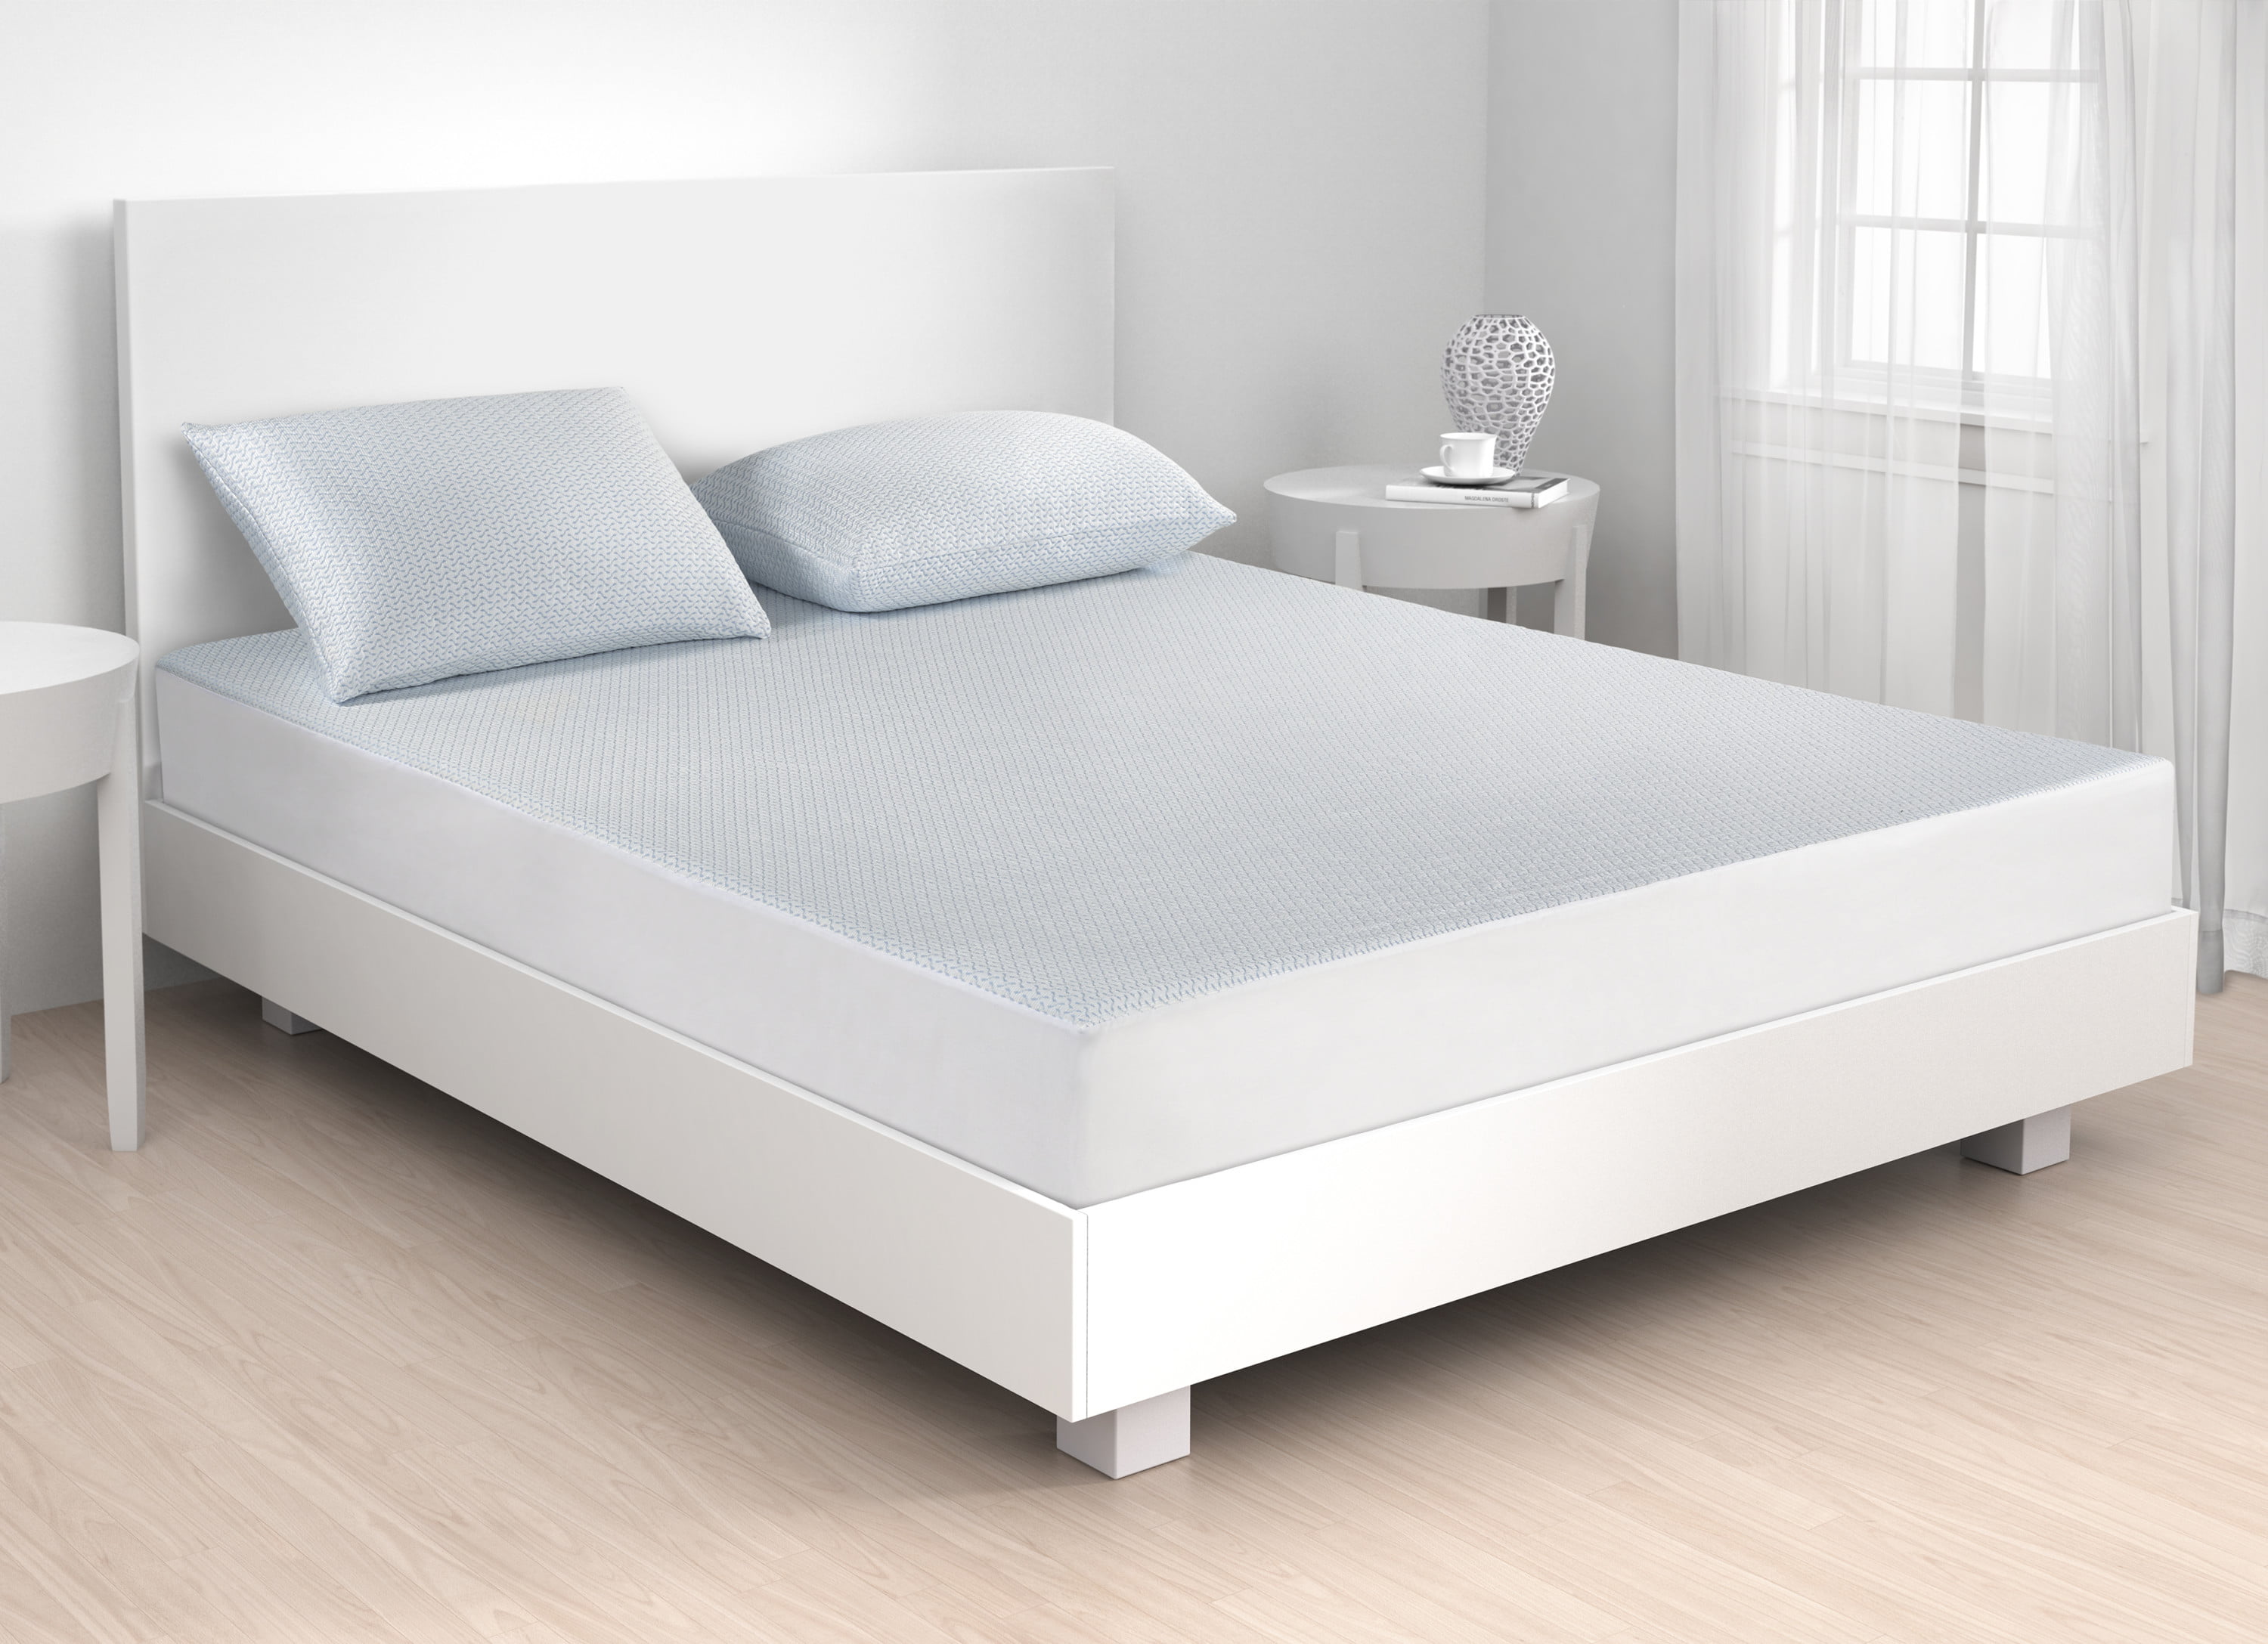 beautyrest silver sensacool mattress pad waterproof